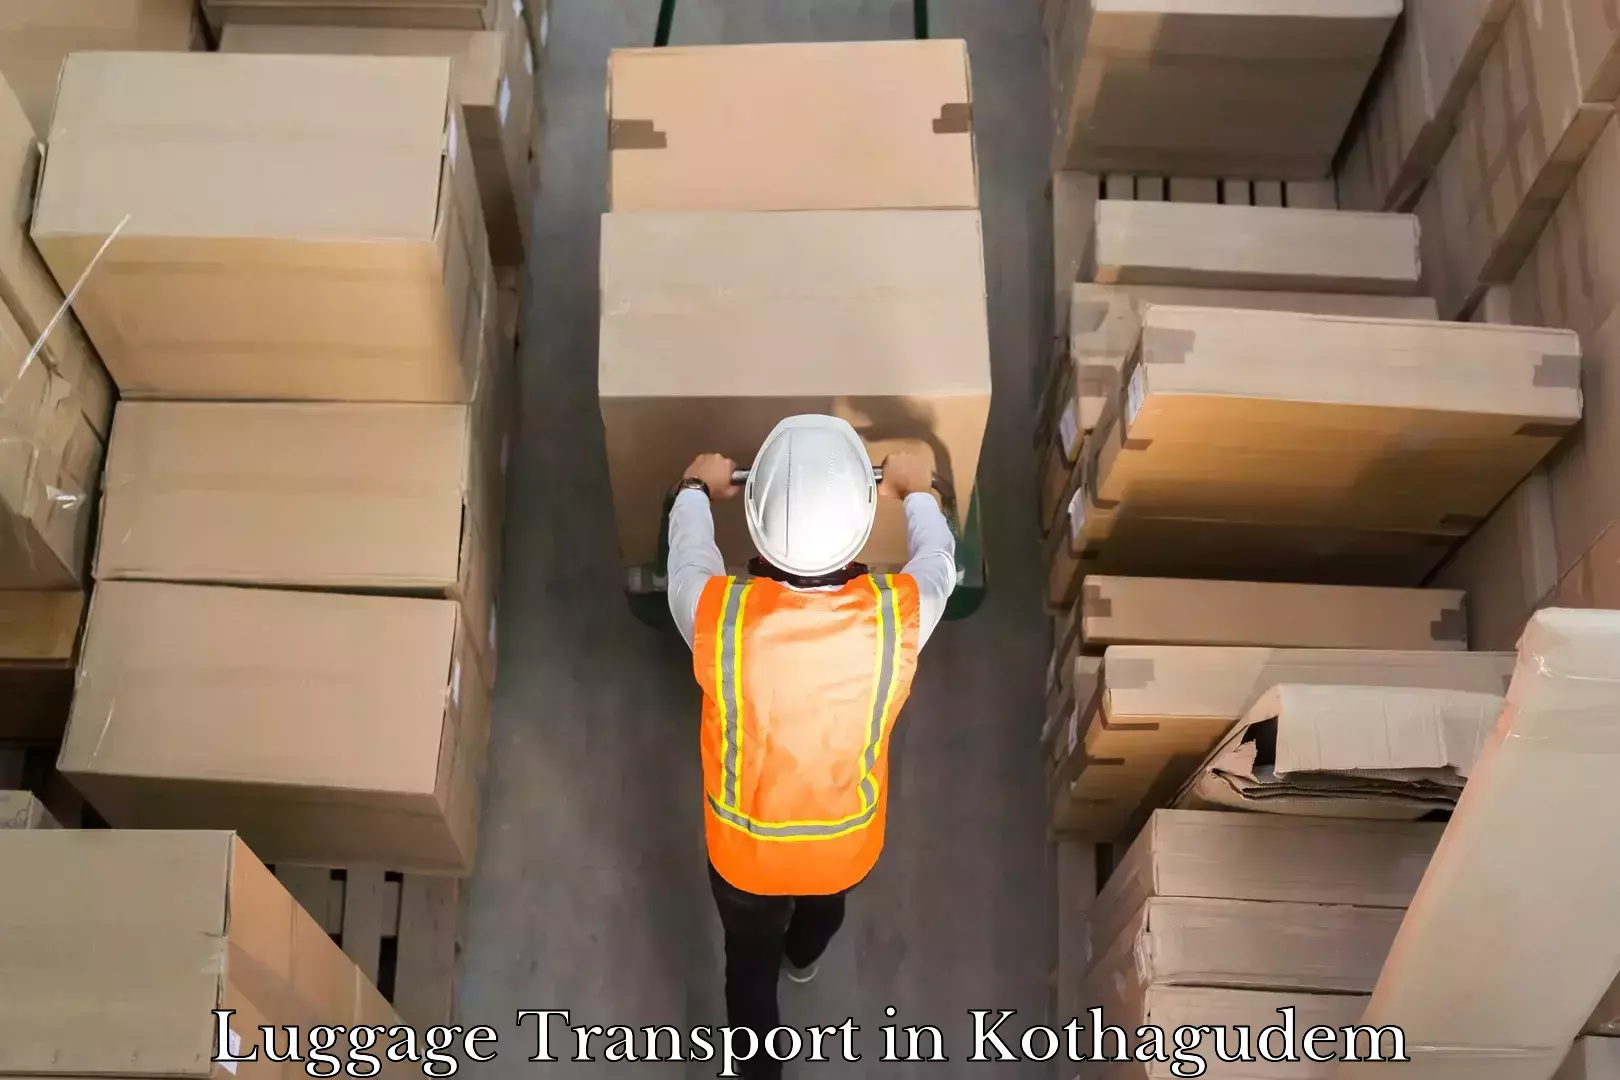 Baggage transport estimate in Kothagudem